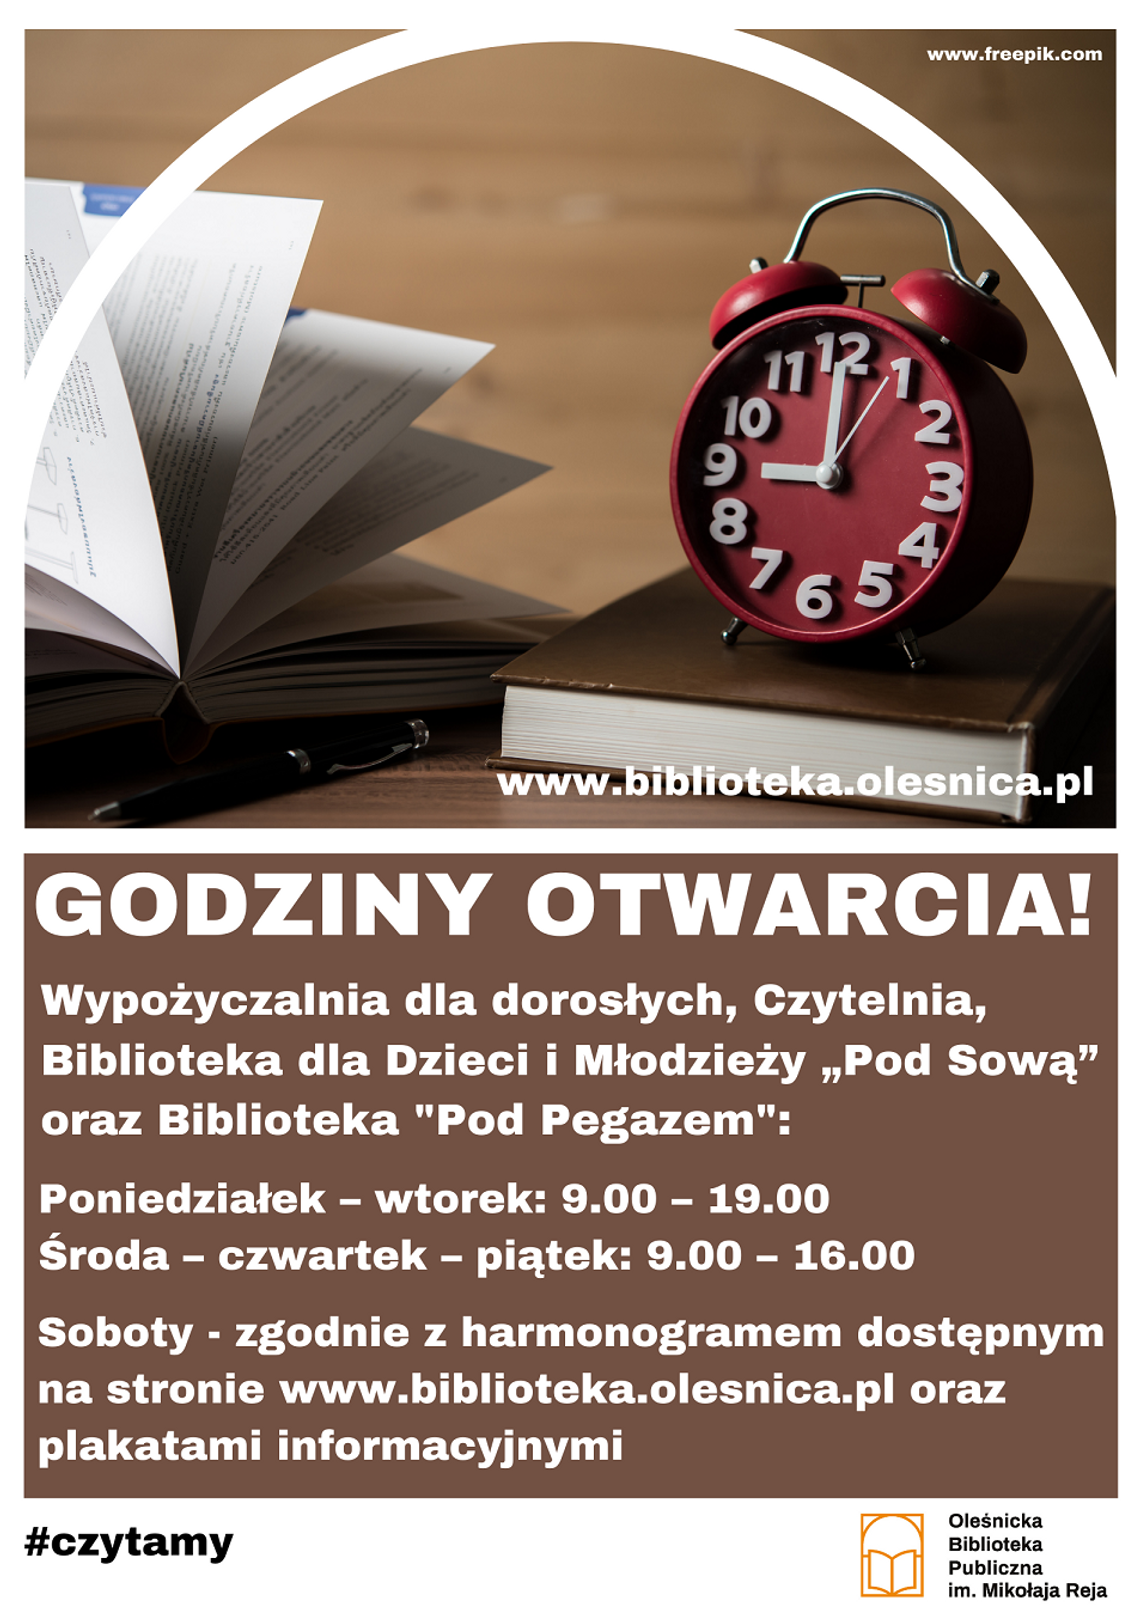 Biblioteka w Oleśnicy zaprasza od dzisiaj